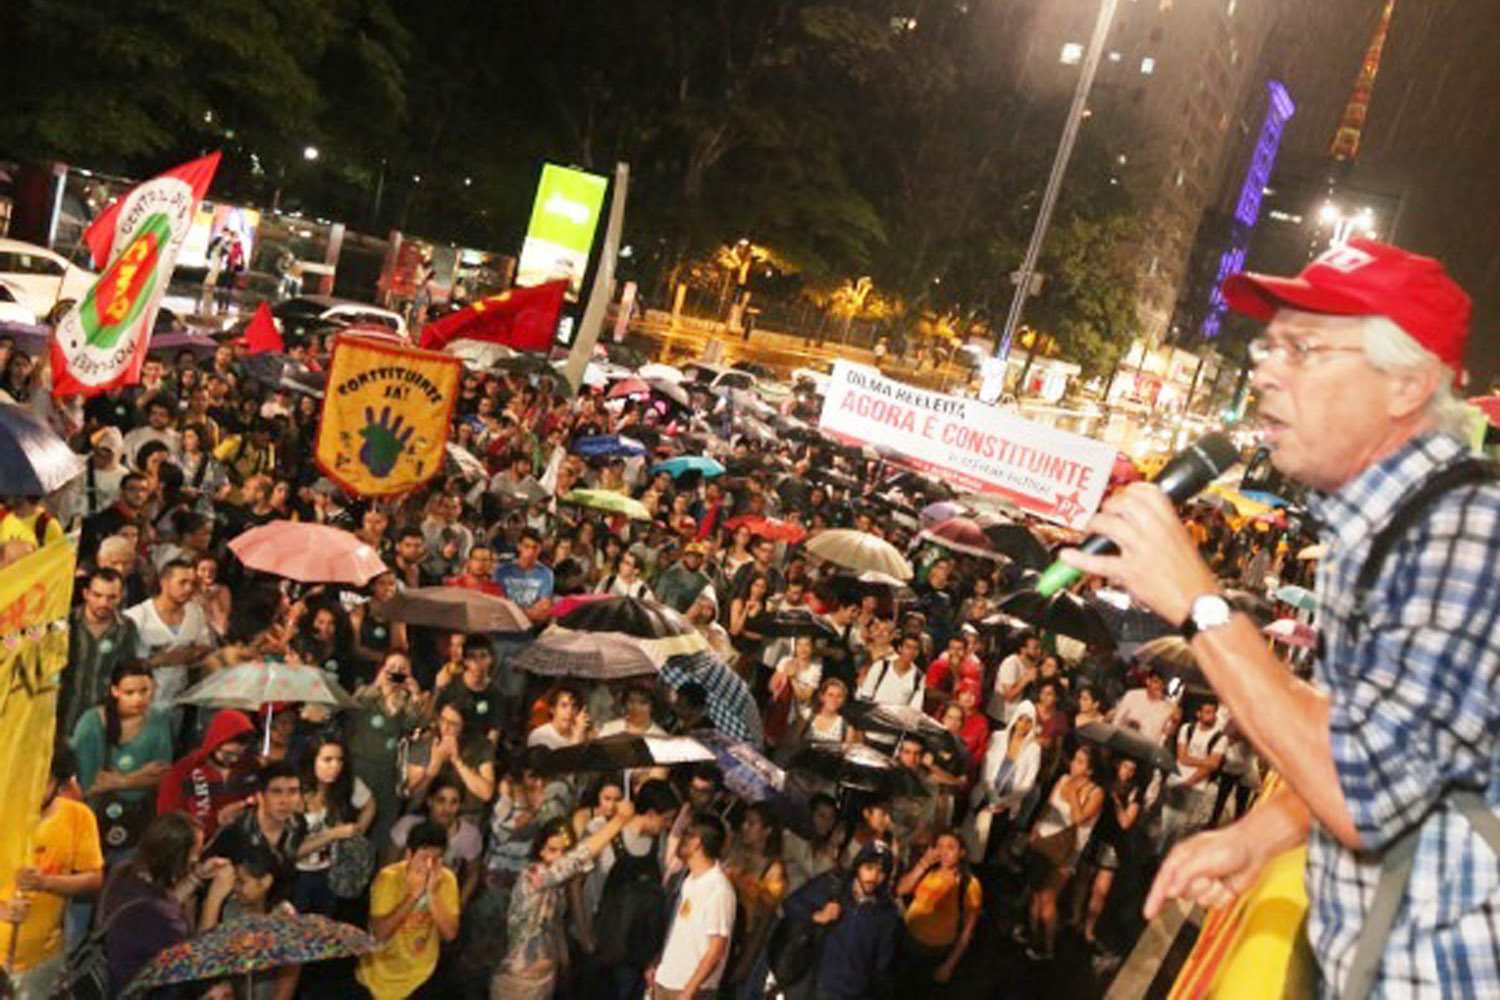 Mobilização na Avenida Paulista pede mais democracia